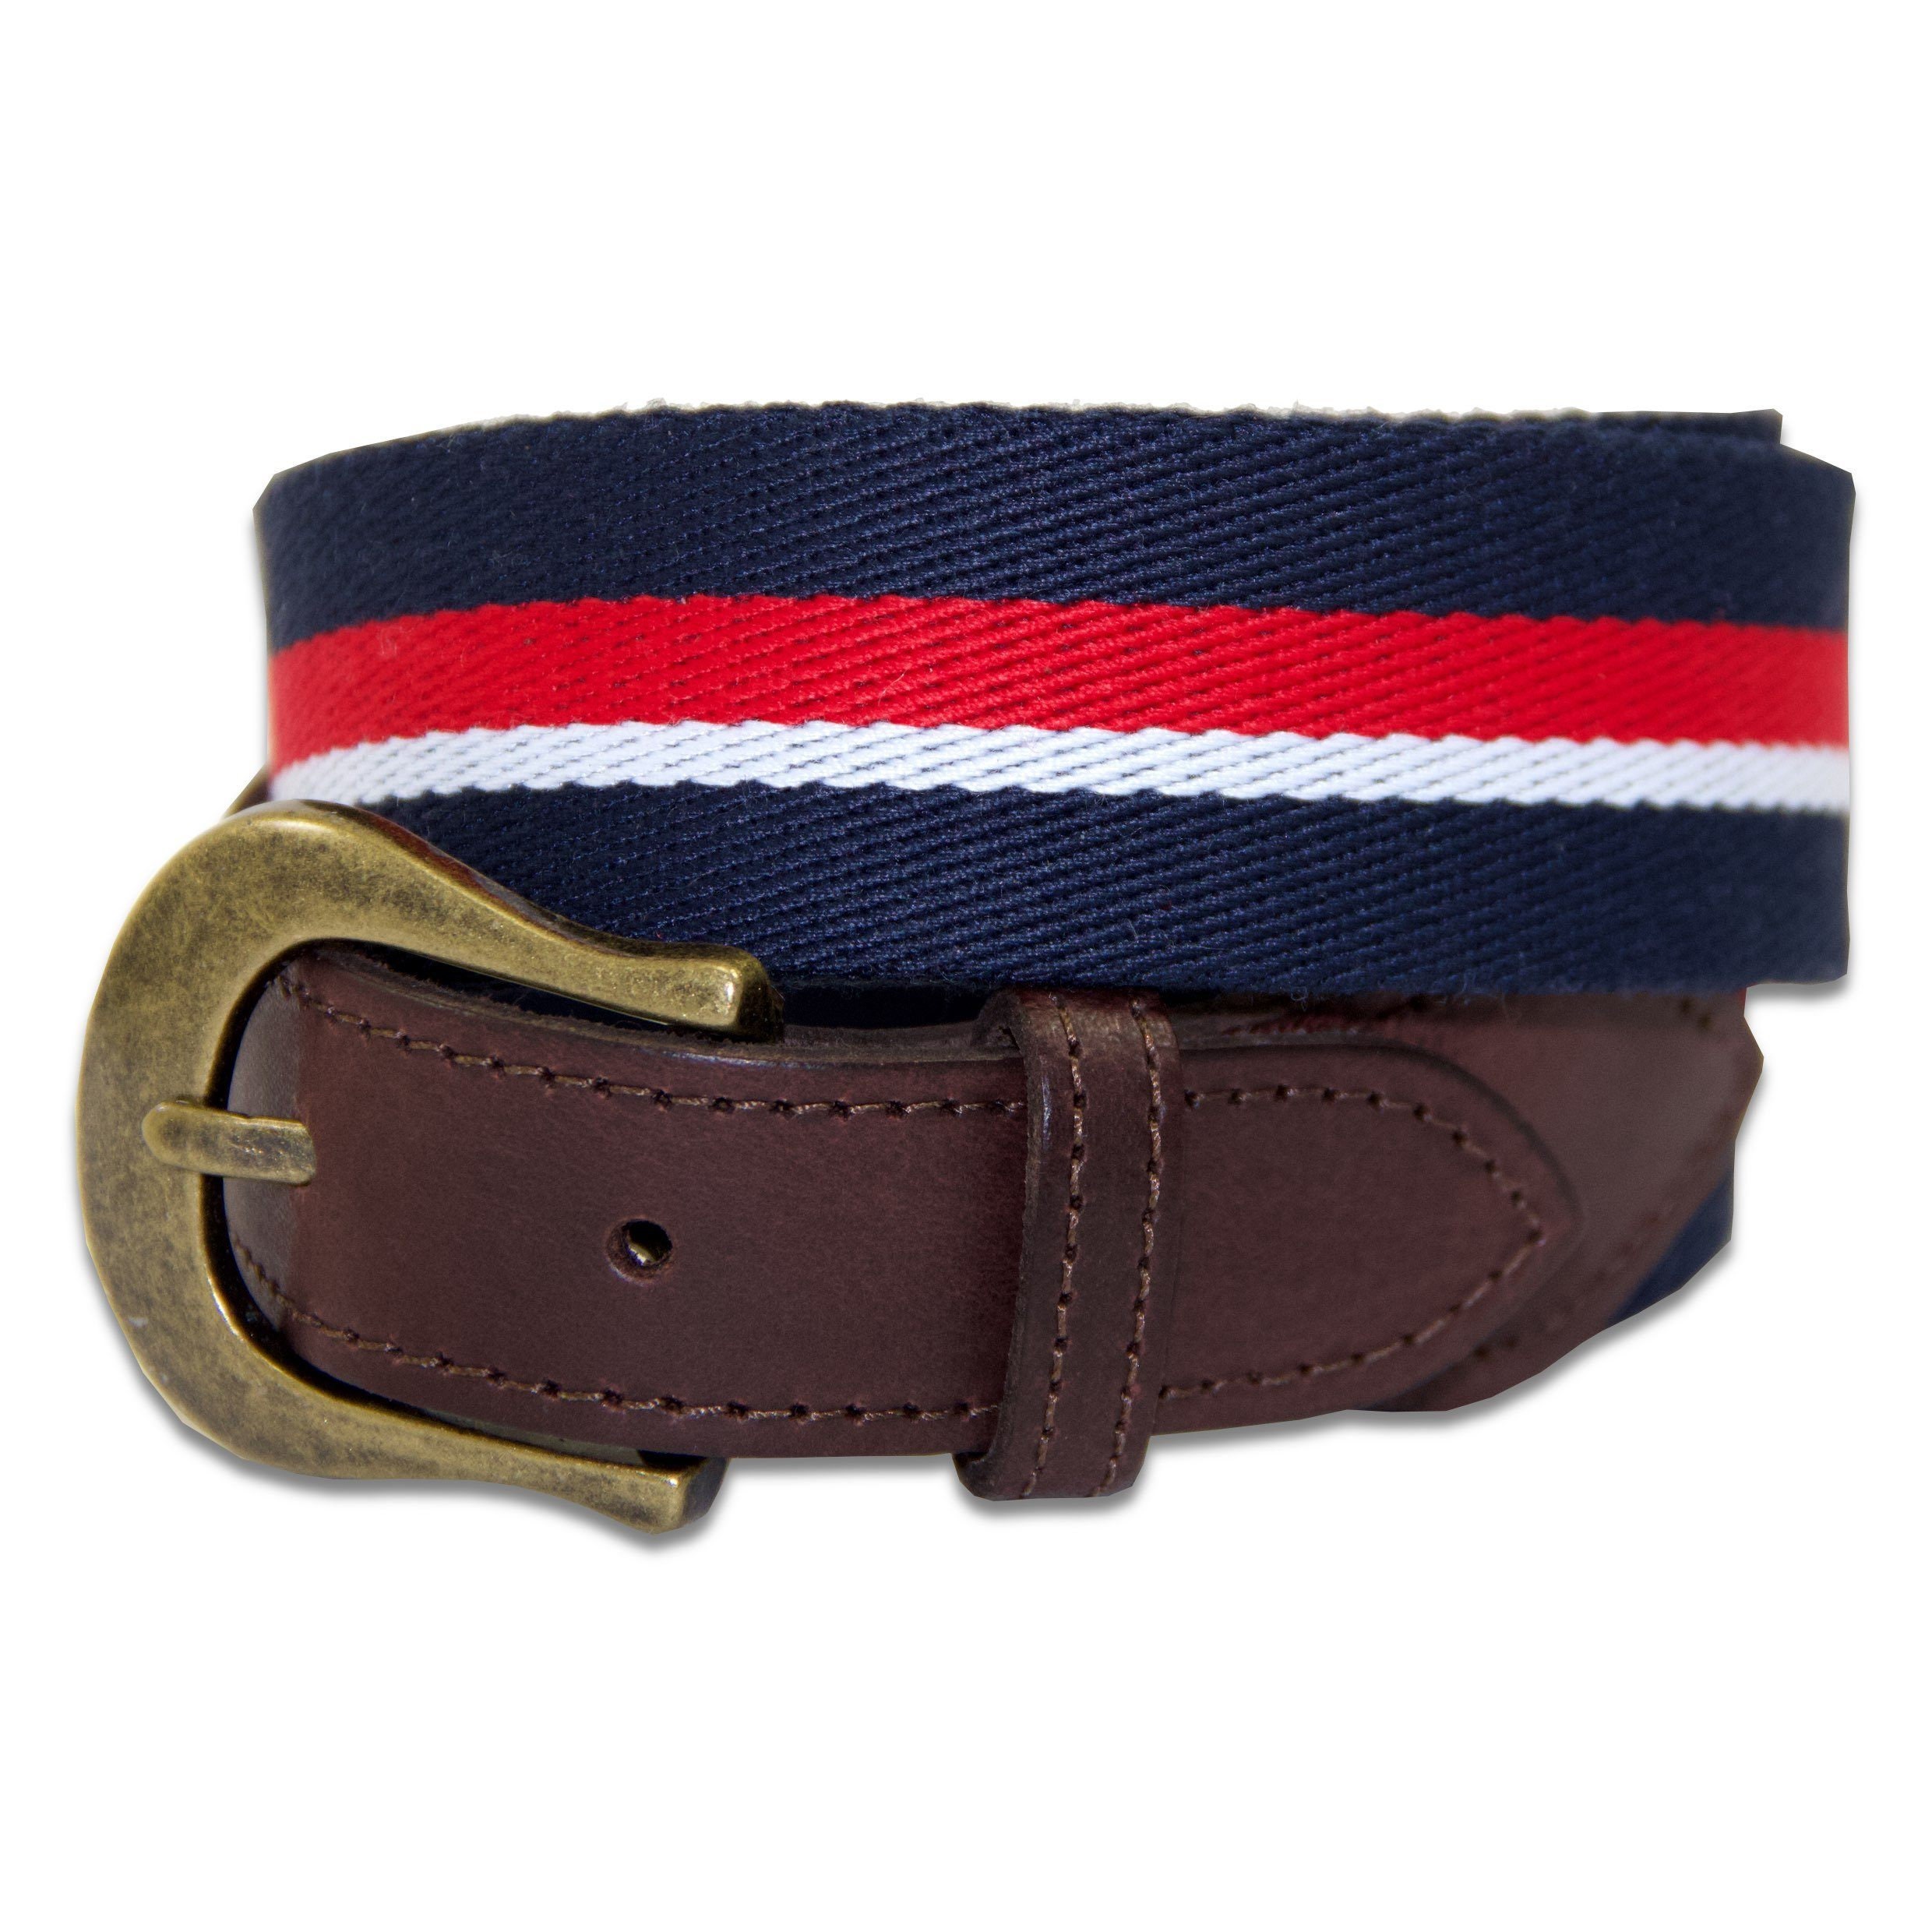 cinturón de moda ceremonial Faja de seda roja con dos borlas Accesorios Cinturones y tirantes Hebillas para cinturón 